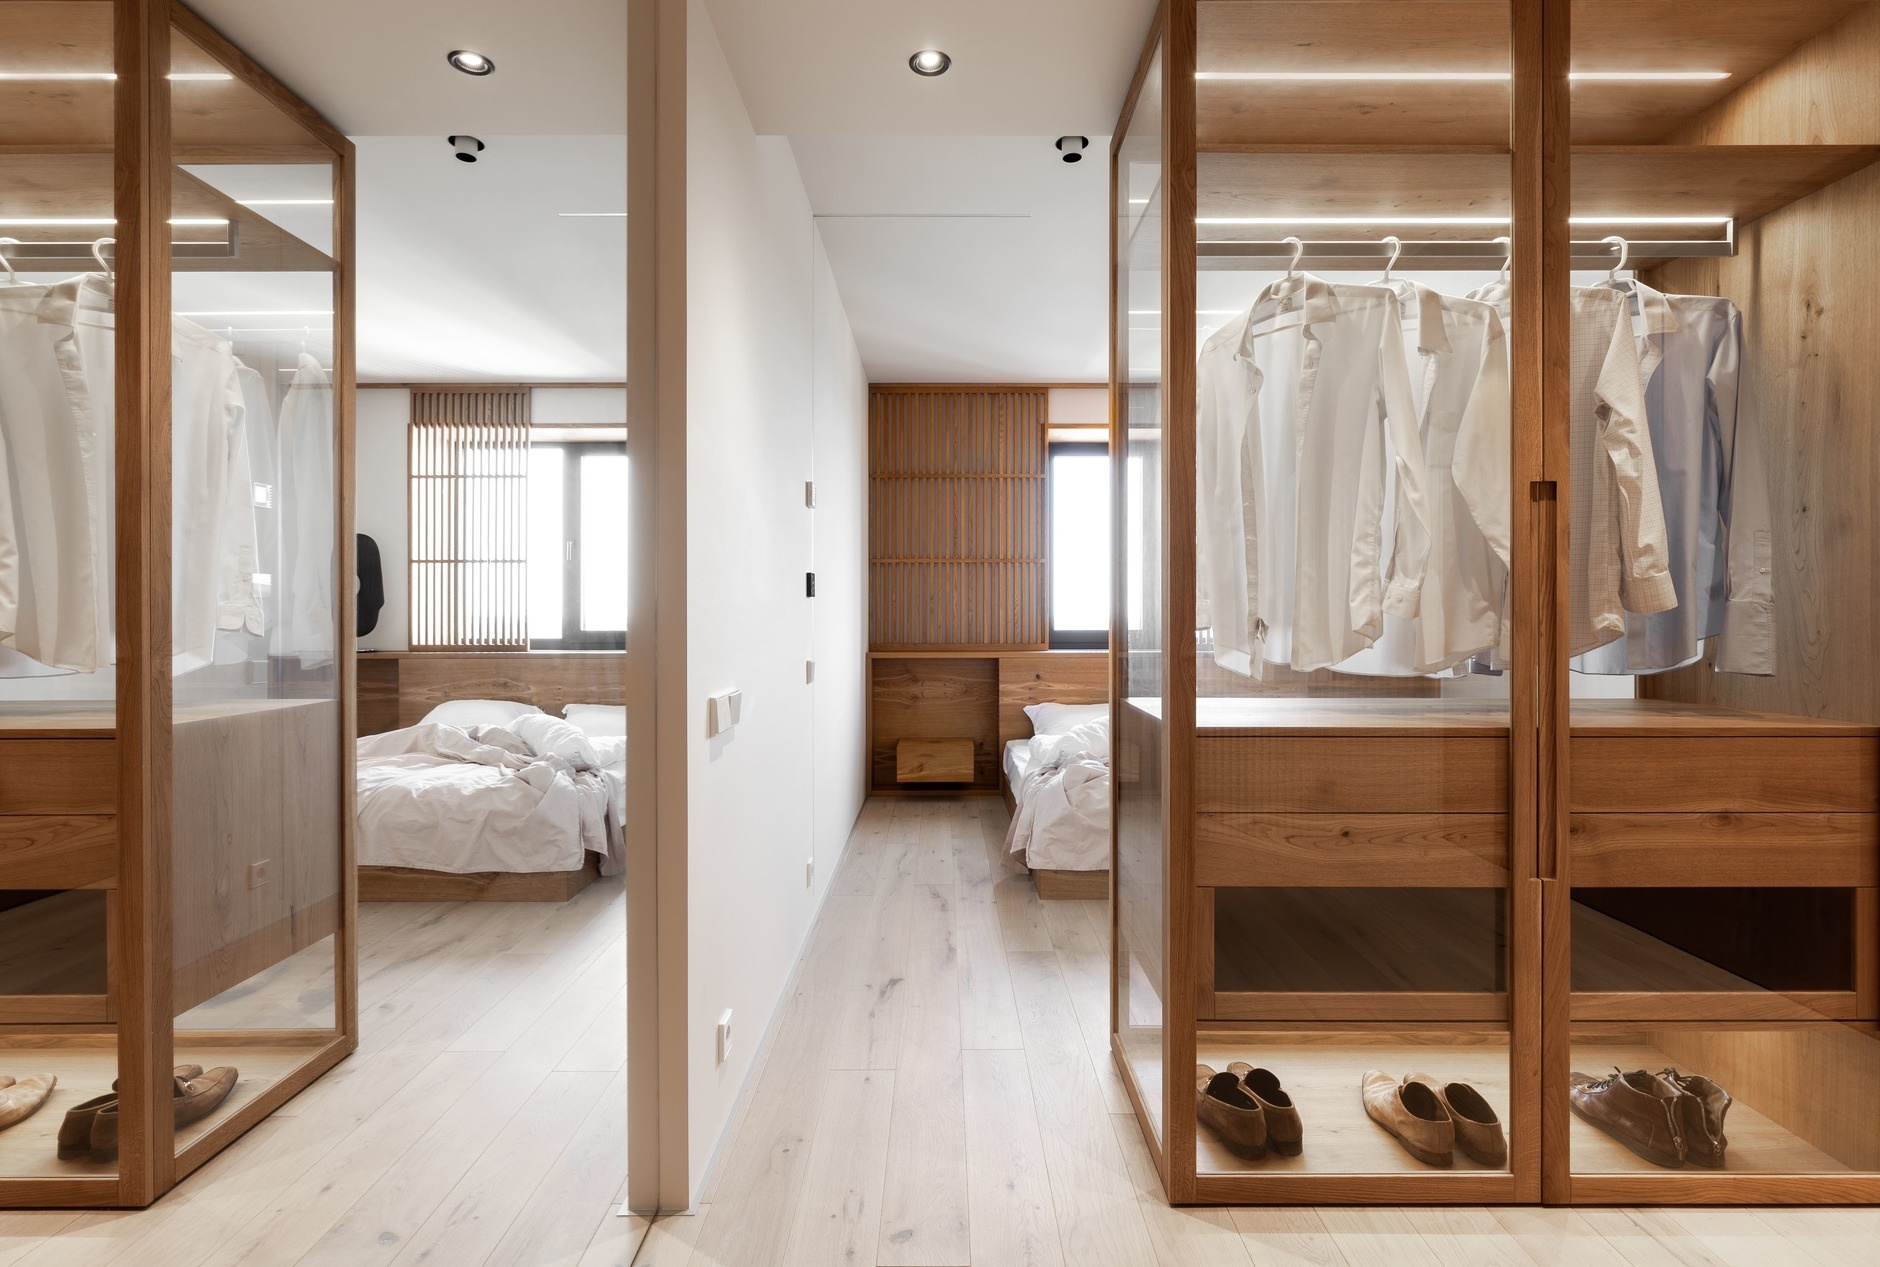 NTK Rina Lovko đã khéo léo sử dụng chiếc tủ quần áo bằng gỗ với cửa kính trong suốt để lưu trữ cho phòng ngủ, đồng thời cũng là giải pháp phân vùng khu vực nghỉ ngơi với hành lang lối vào một cách trực quan.